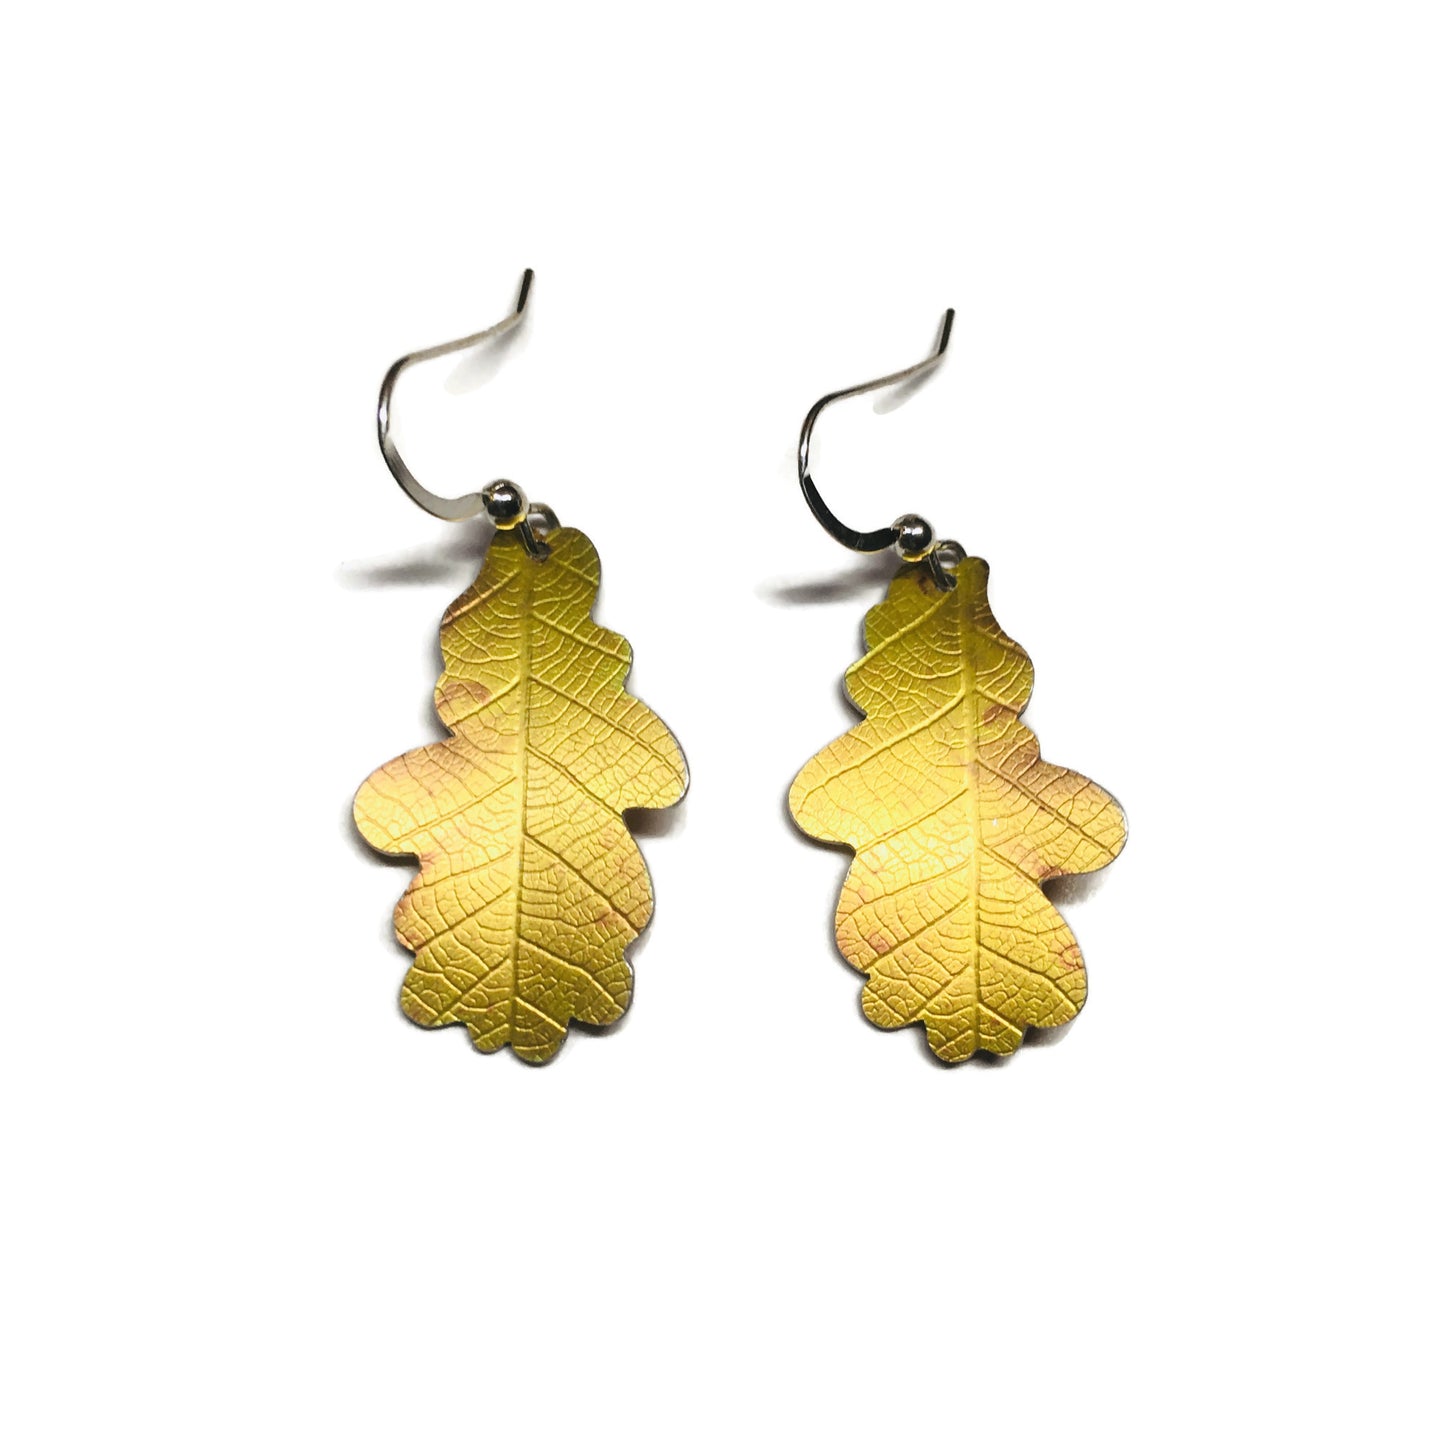 Golden Oak leaf earrings by Photofinish Jewellery